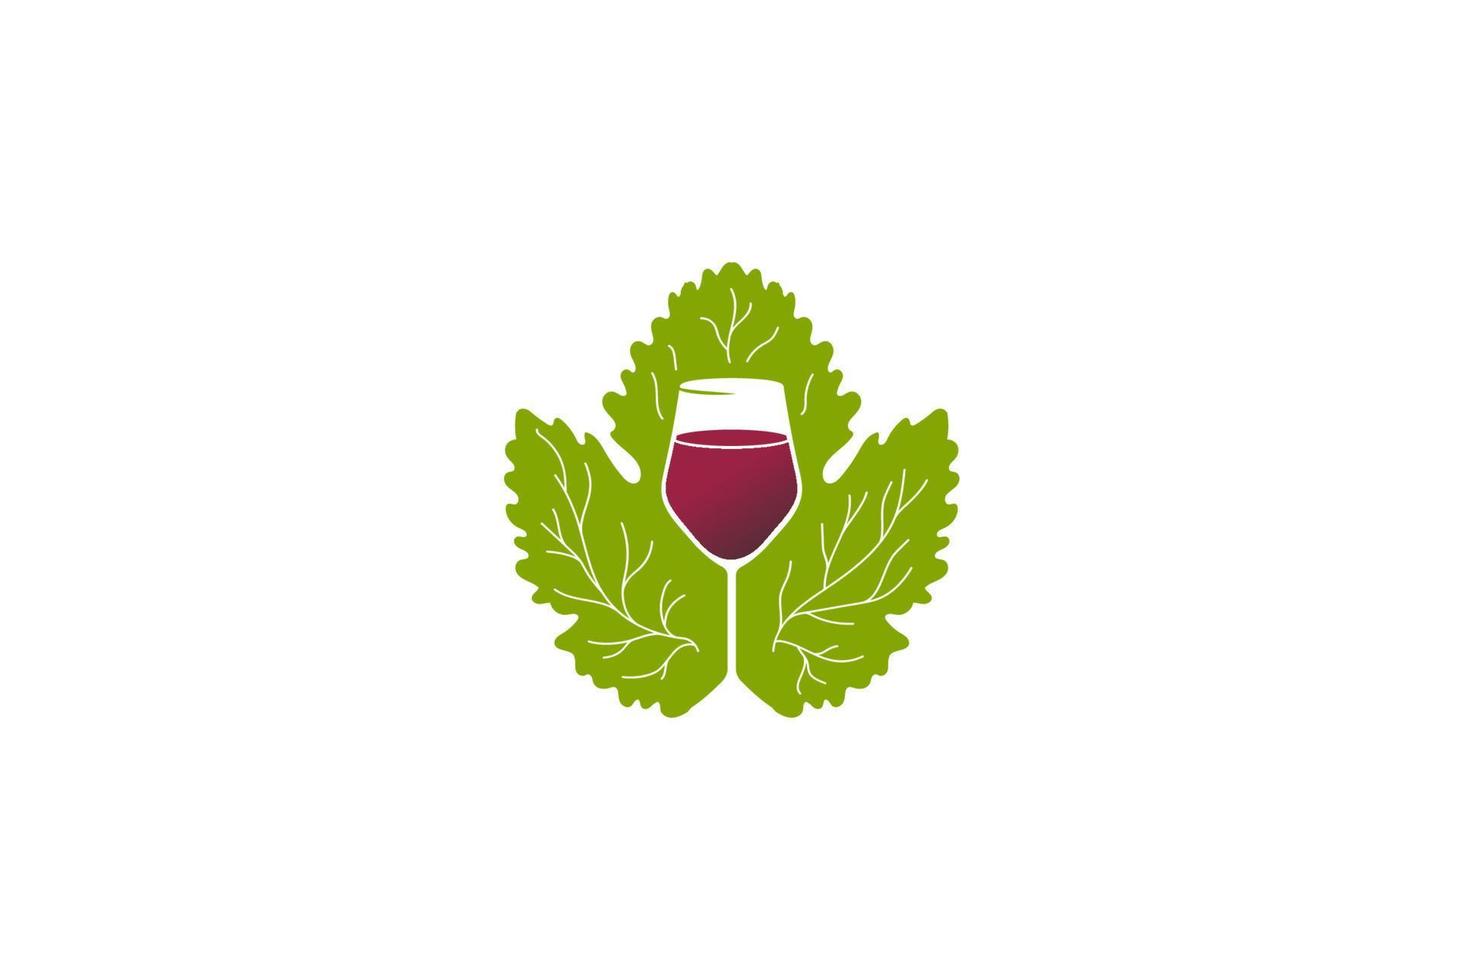 folha de uva verde com vetor de design de logotipo de copo de uísque de vinho